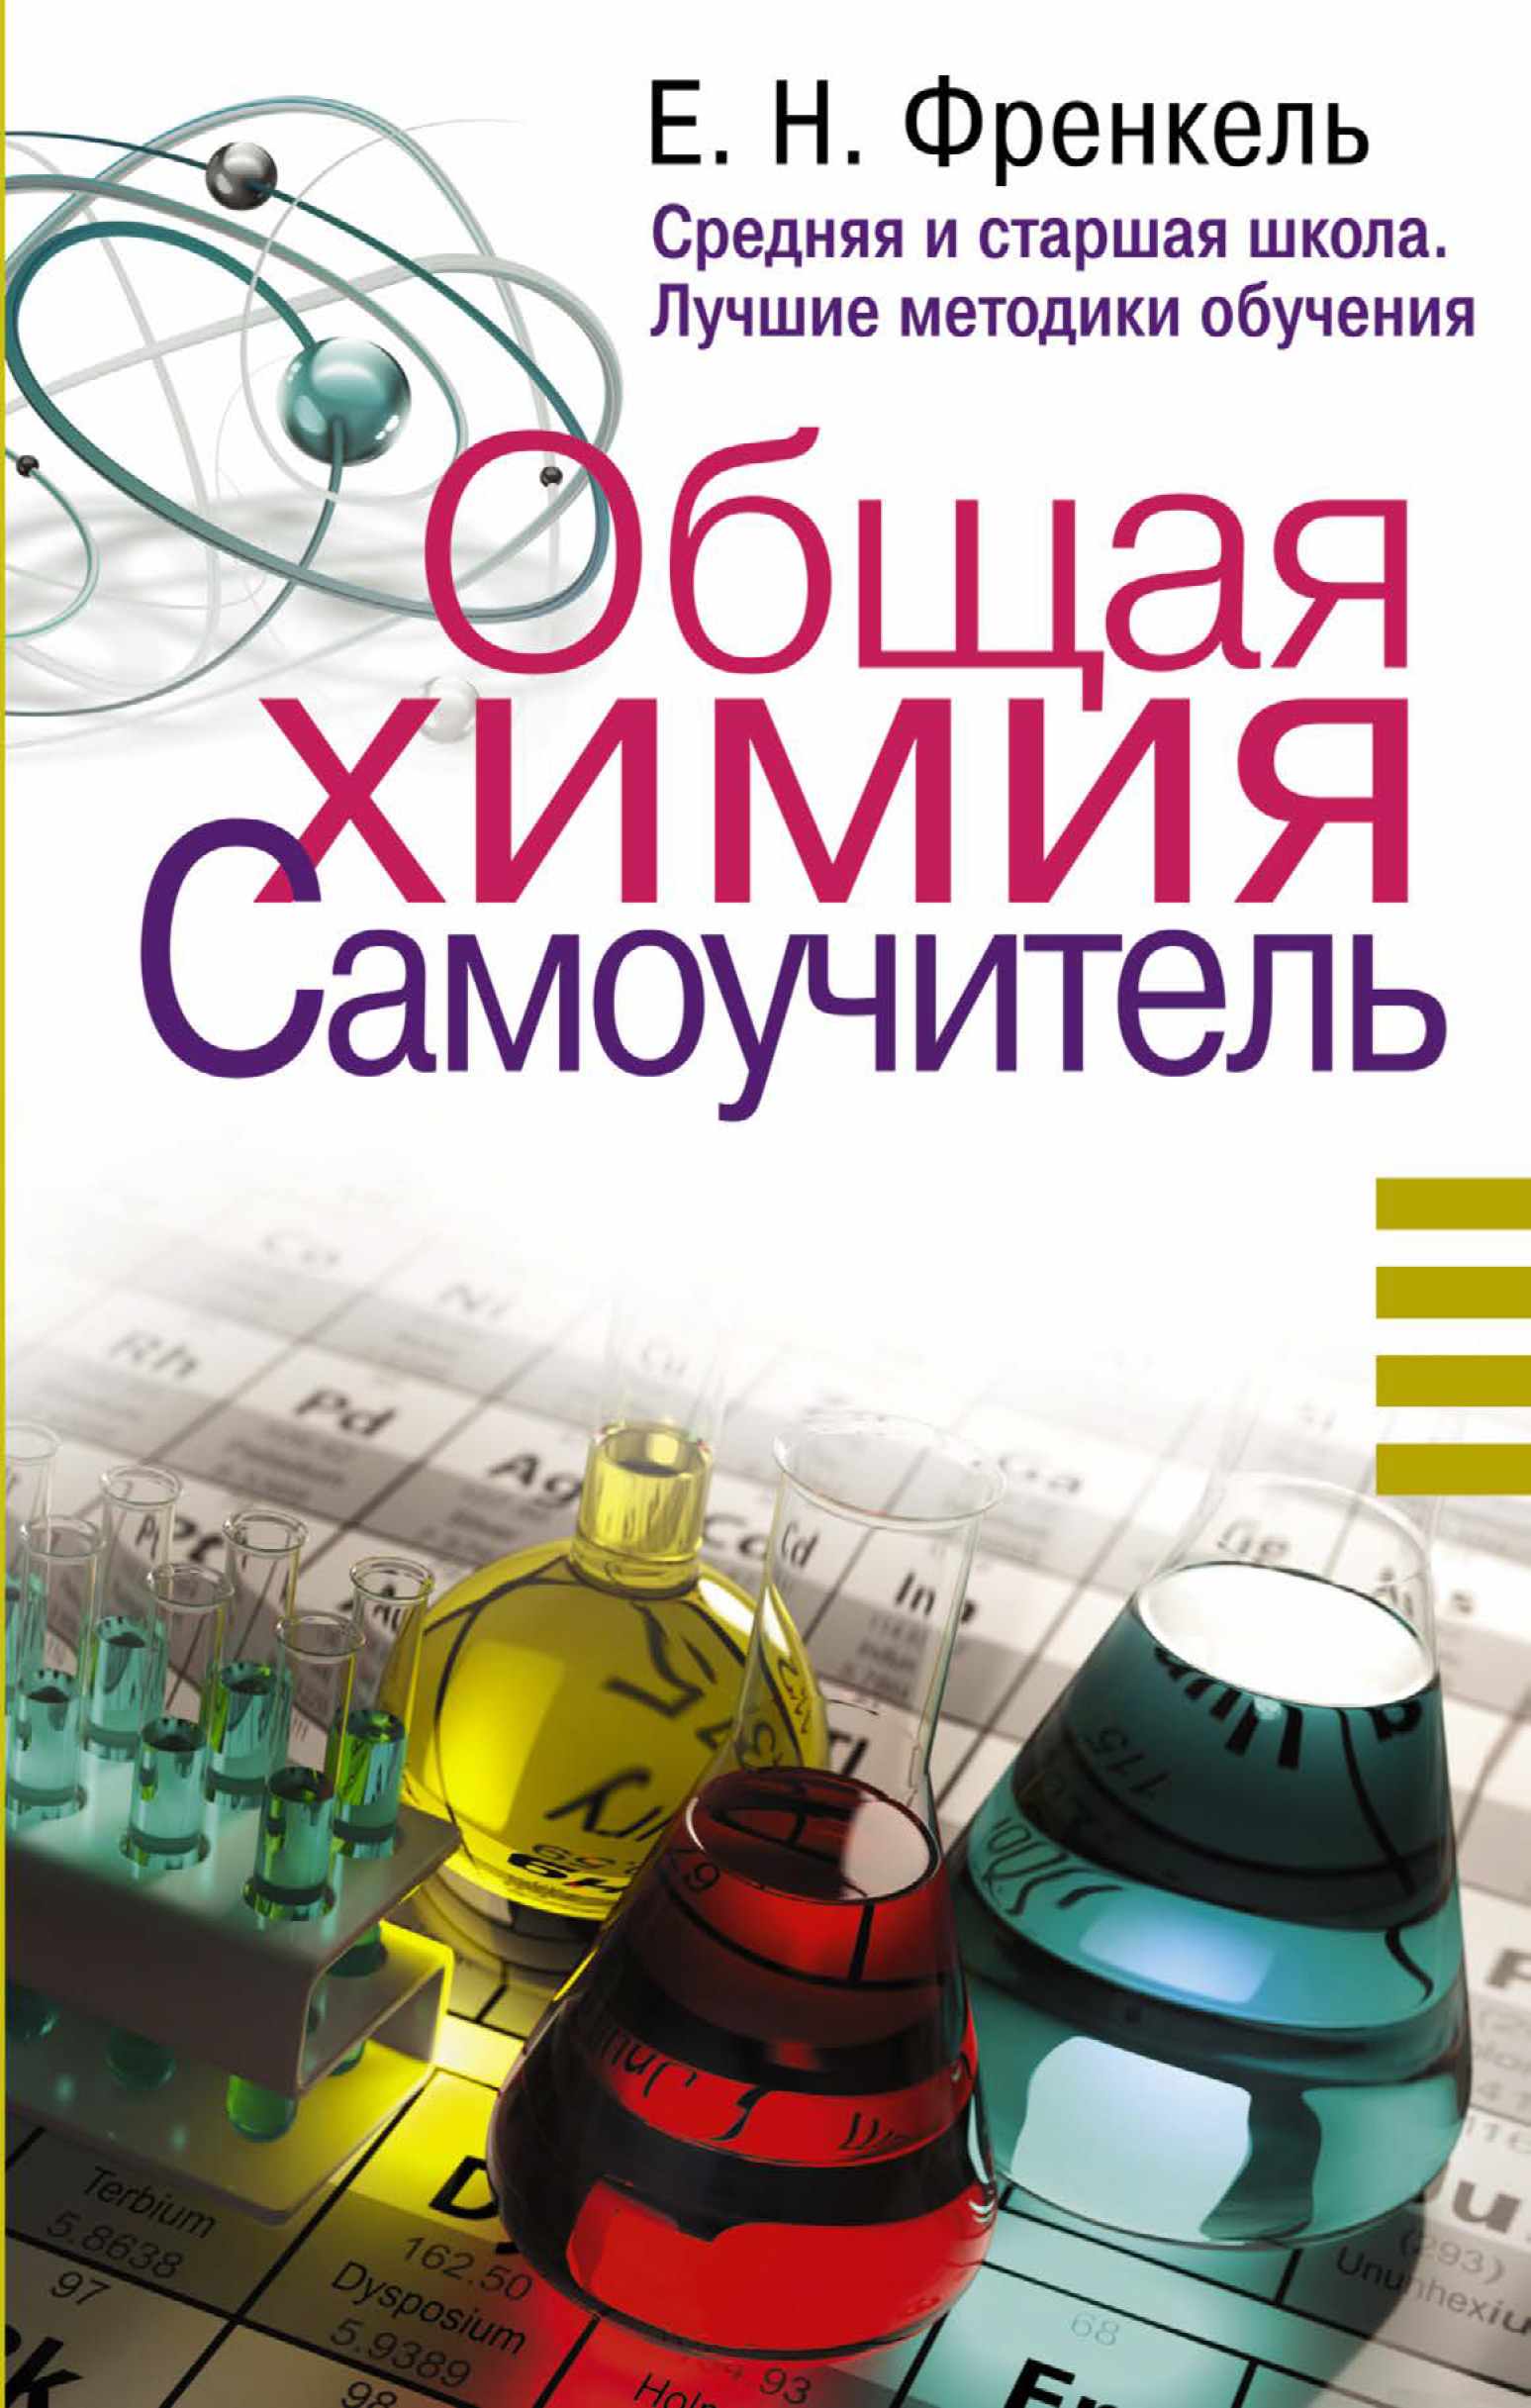 Химия - Поиск и заказ литературы по каталогу научного фонда